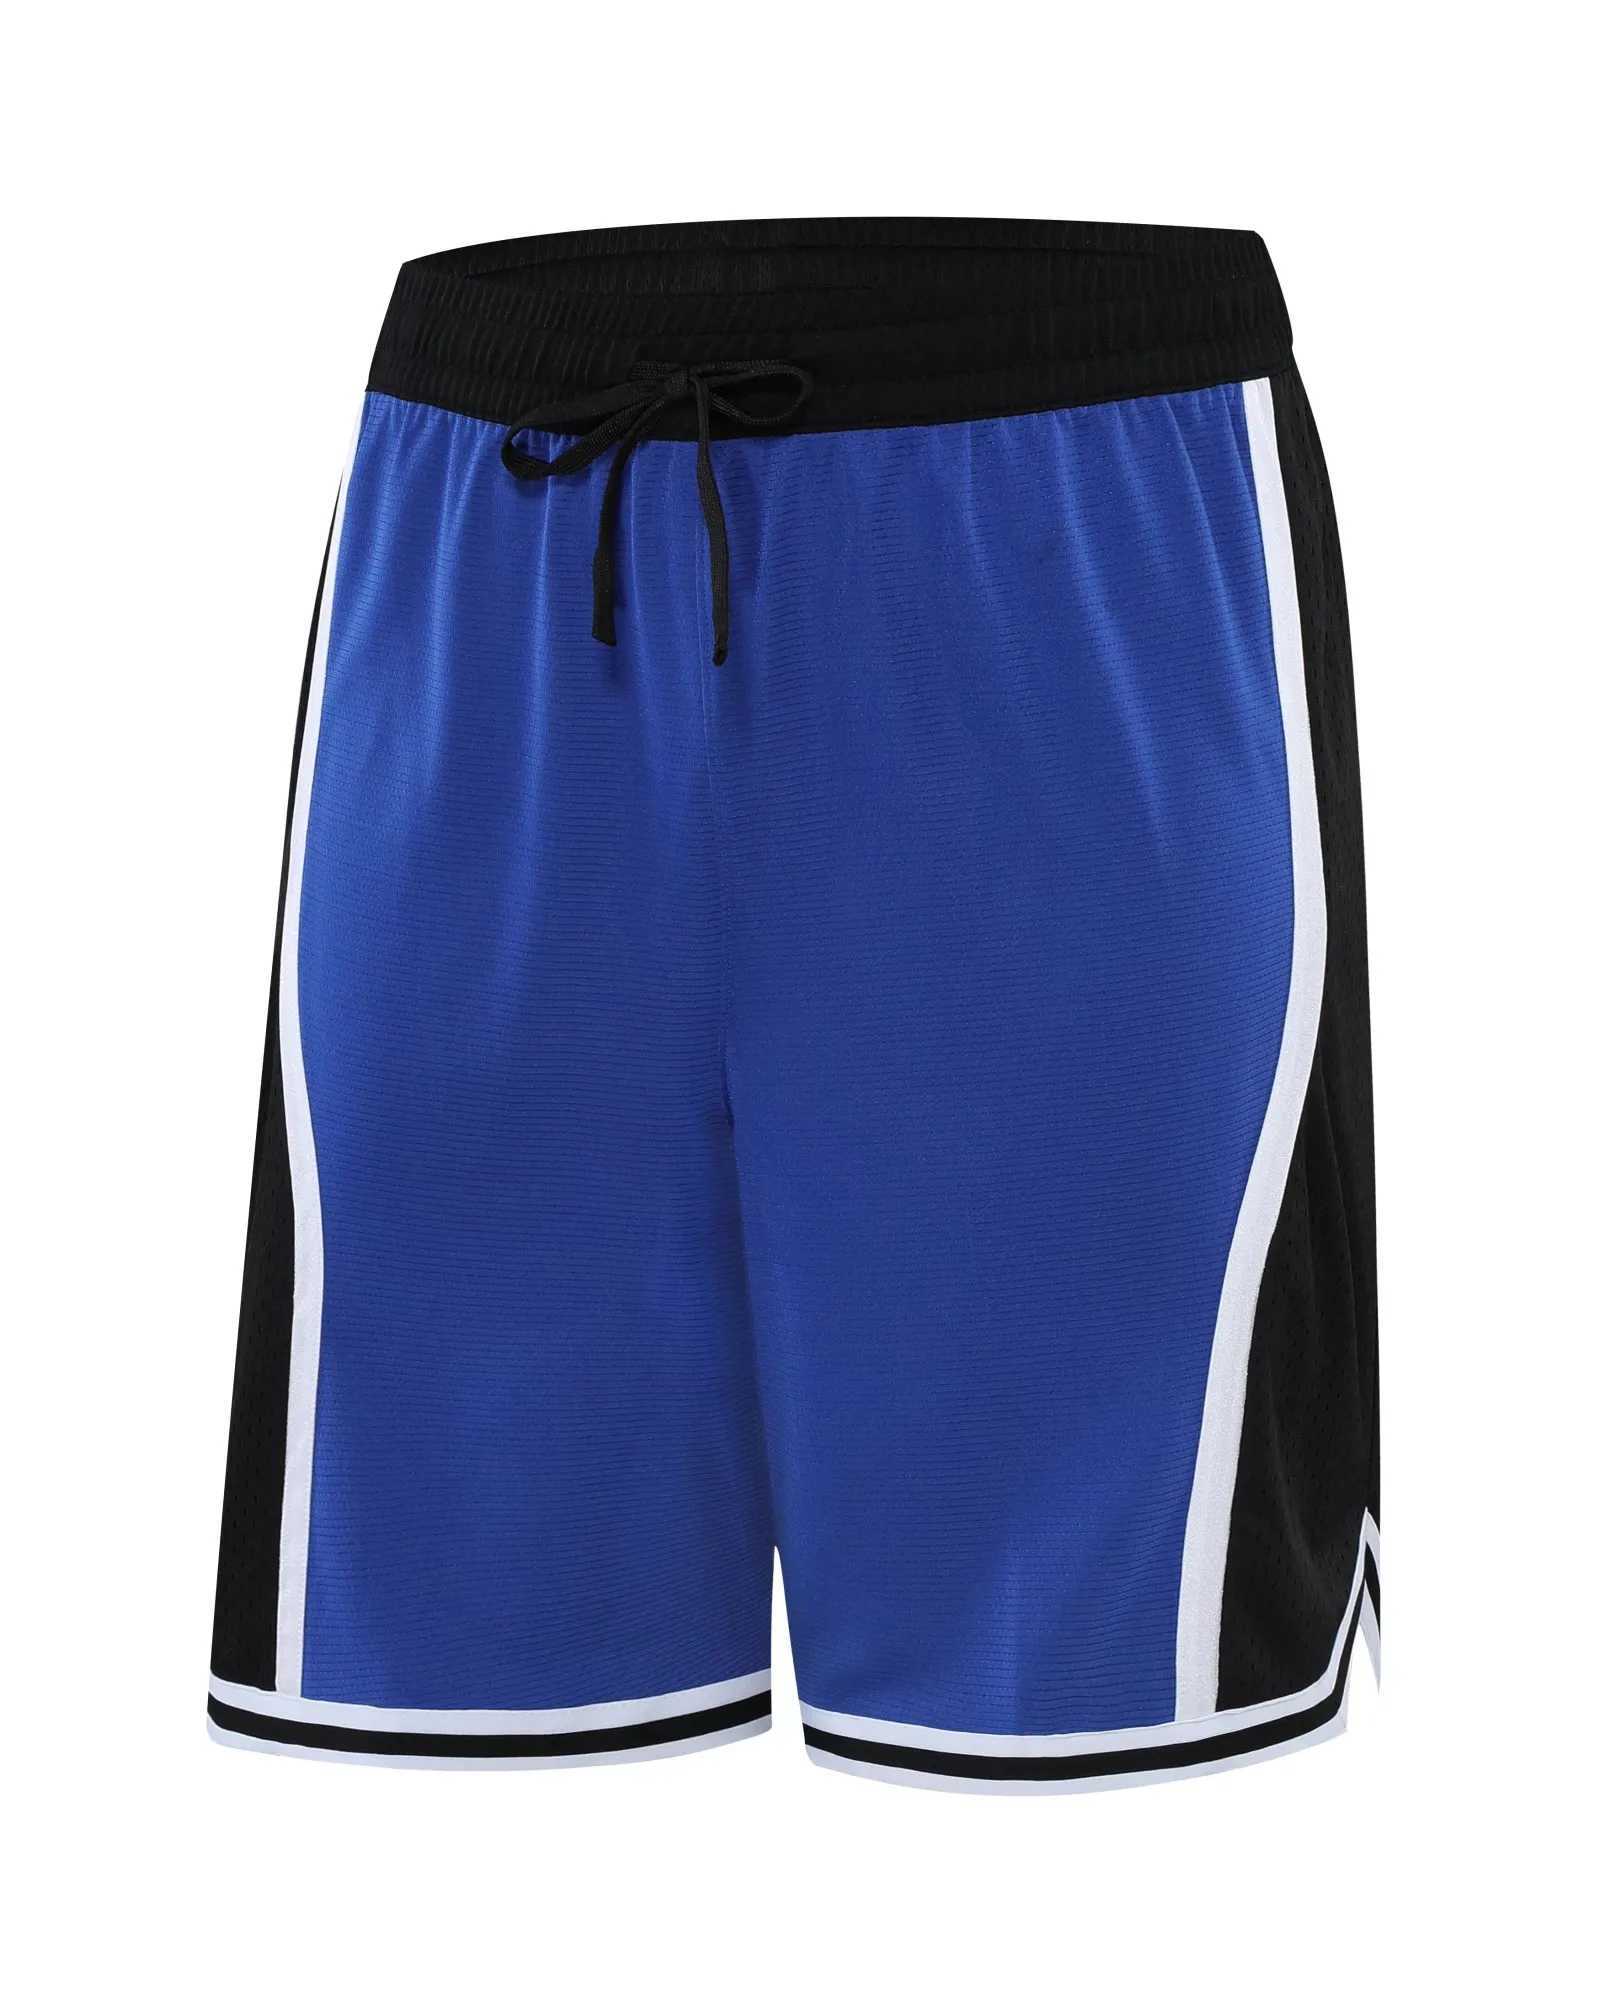 Мужские шорты Баскетбольные высокие гибкие шорты Модные удобные модные в американском стиле Бесплатная доставка J240322